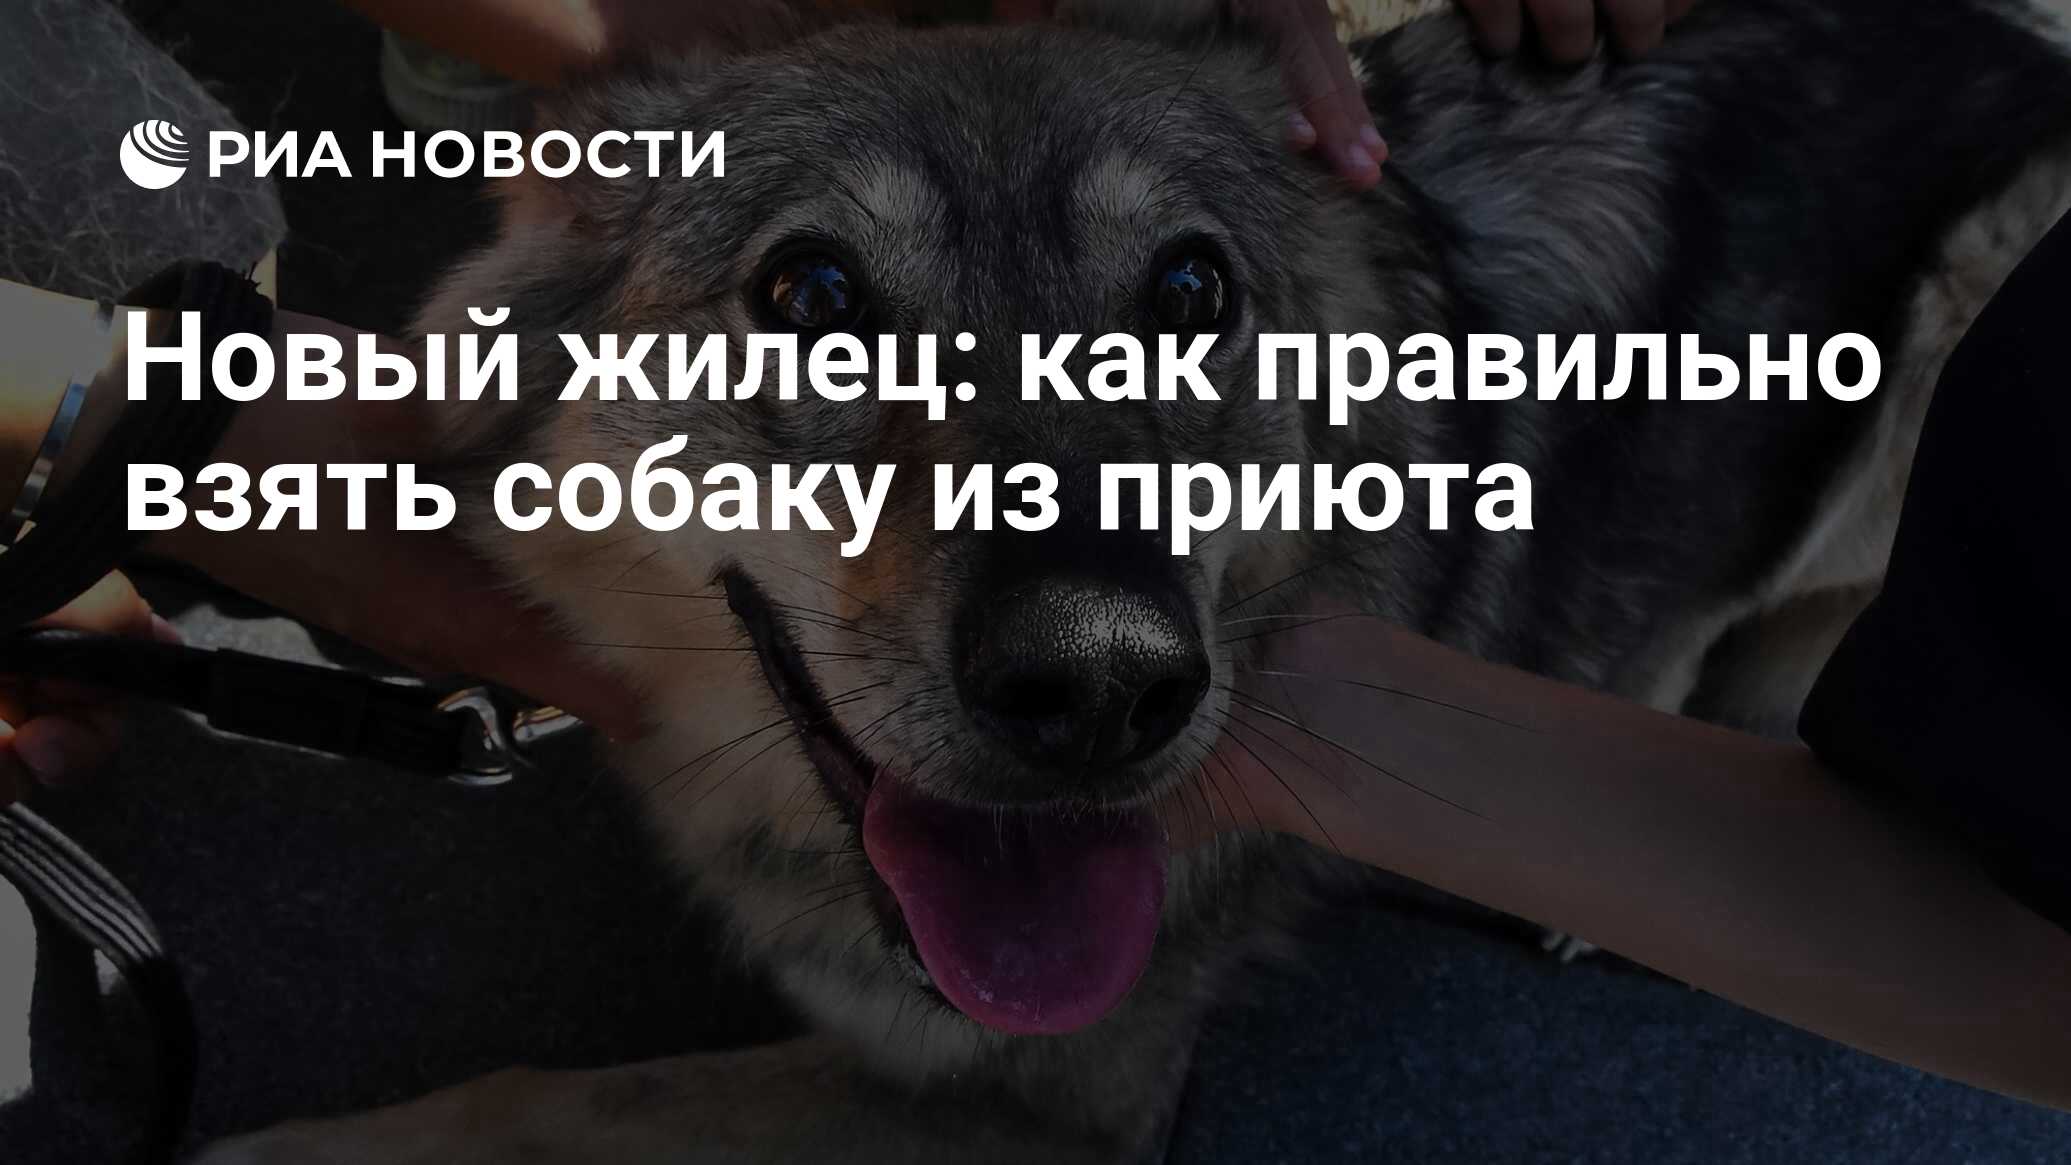 Новый жилец: как правильно взять собаку из приюта - РИА Новости, 31.03.2022